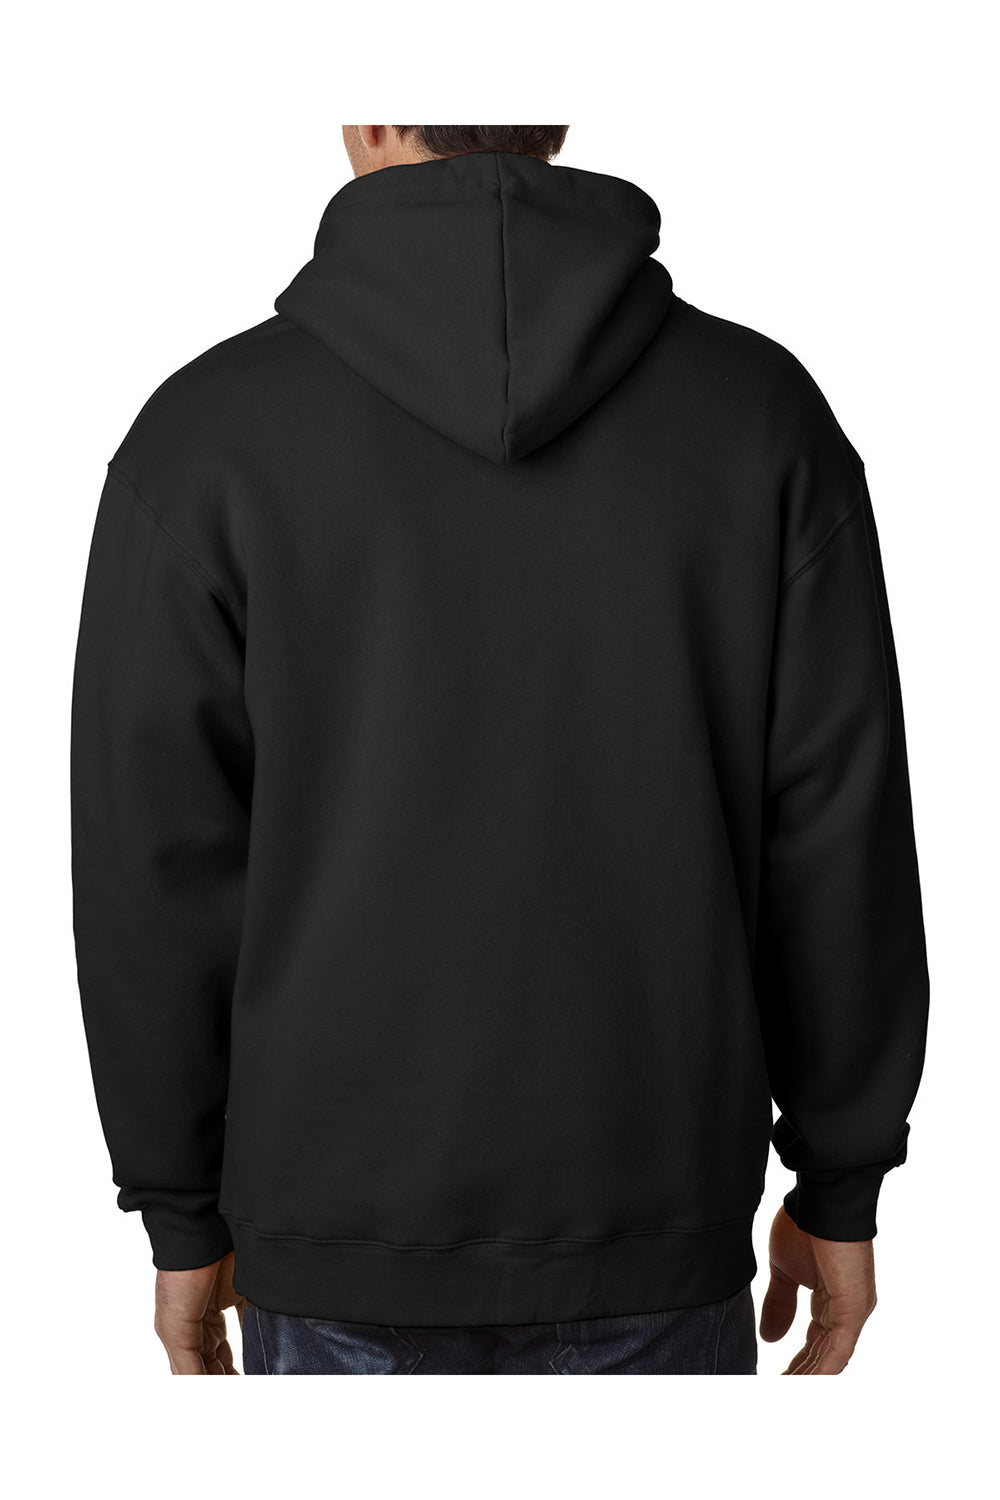 Bayside BA900 Mens USA Made Full Zip Hooded Sweatshirt Hoodie Black Model Back